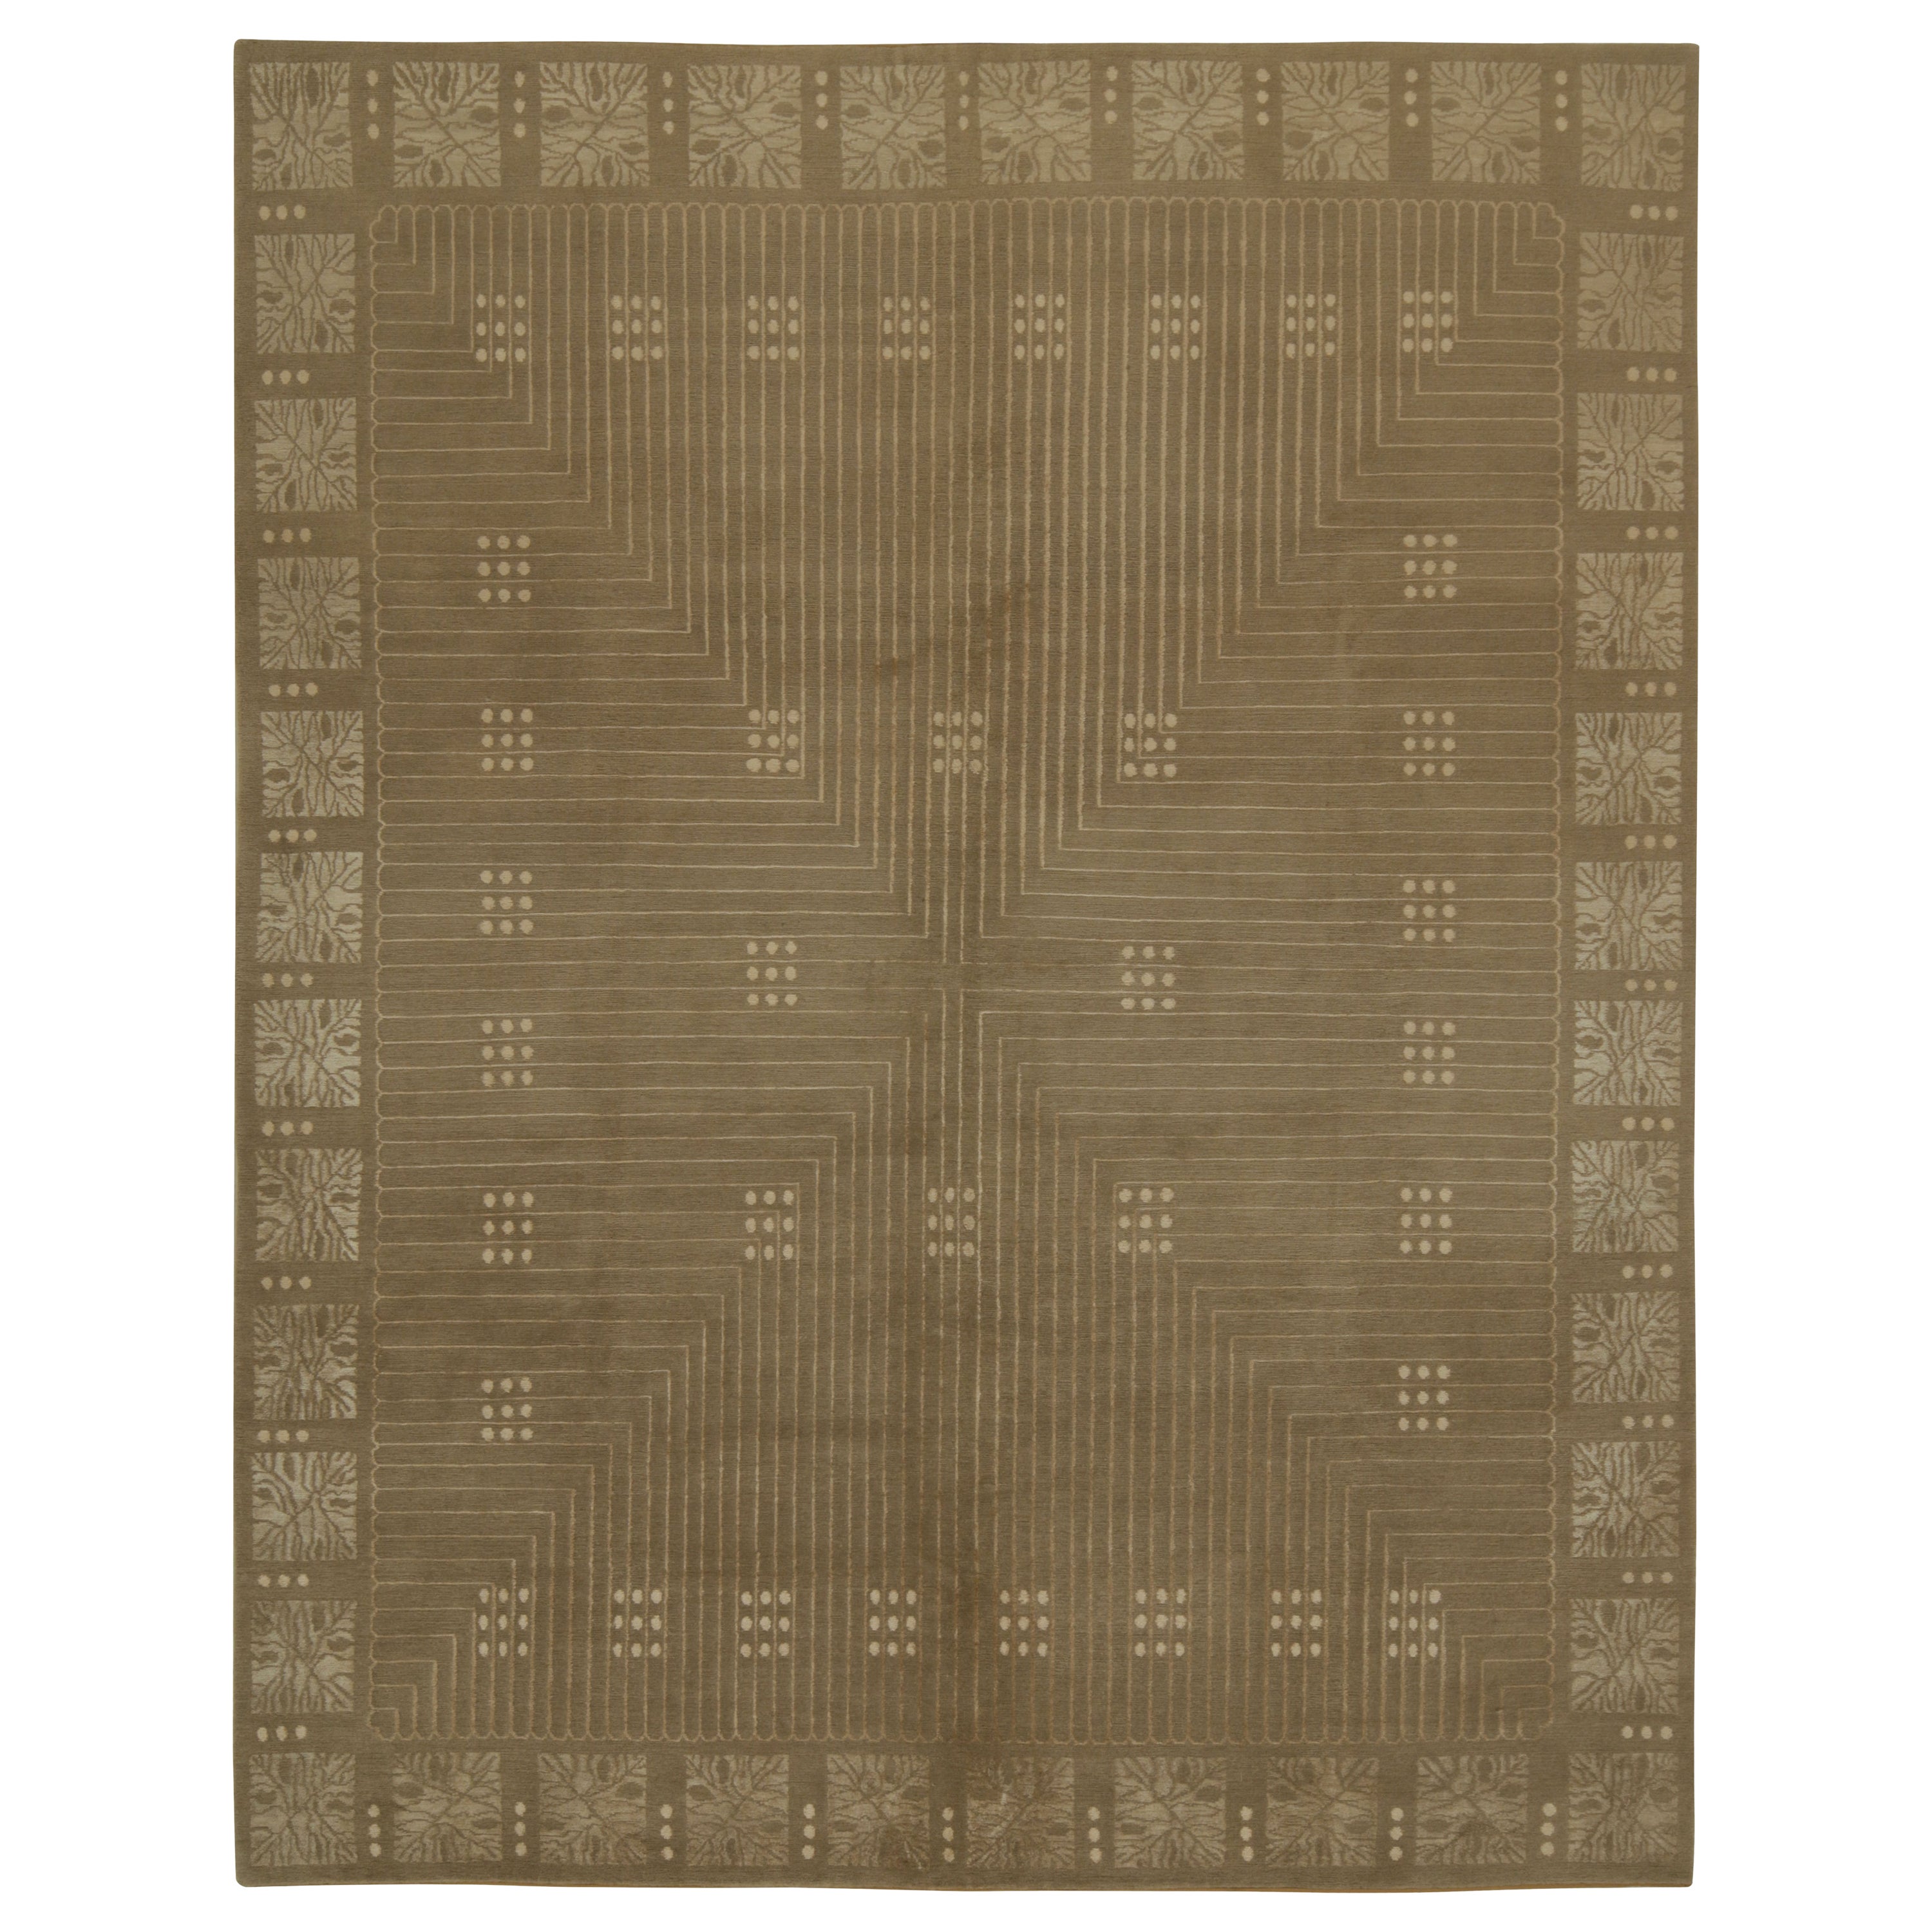 Rug & Kilim's Austrian Style Art Deco Rug in Brown with Beige Geometric Pattern (tapis de style autrichien Art déco en brun avec motif géométrique en beige)